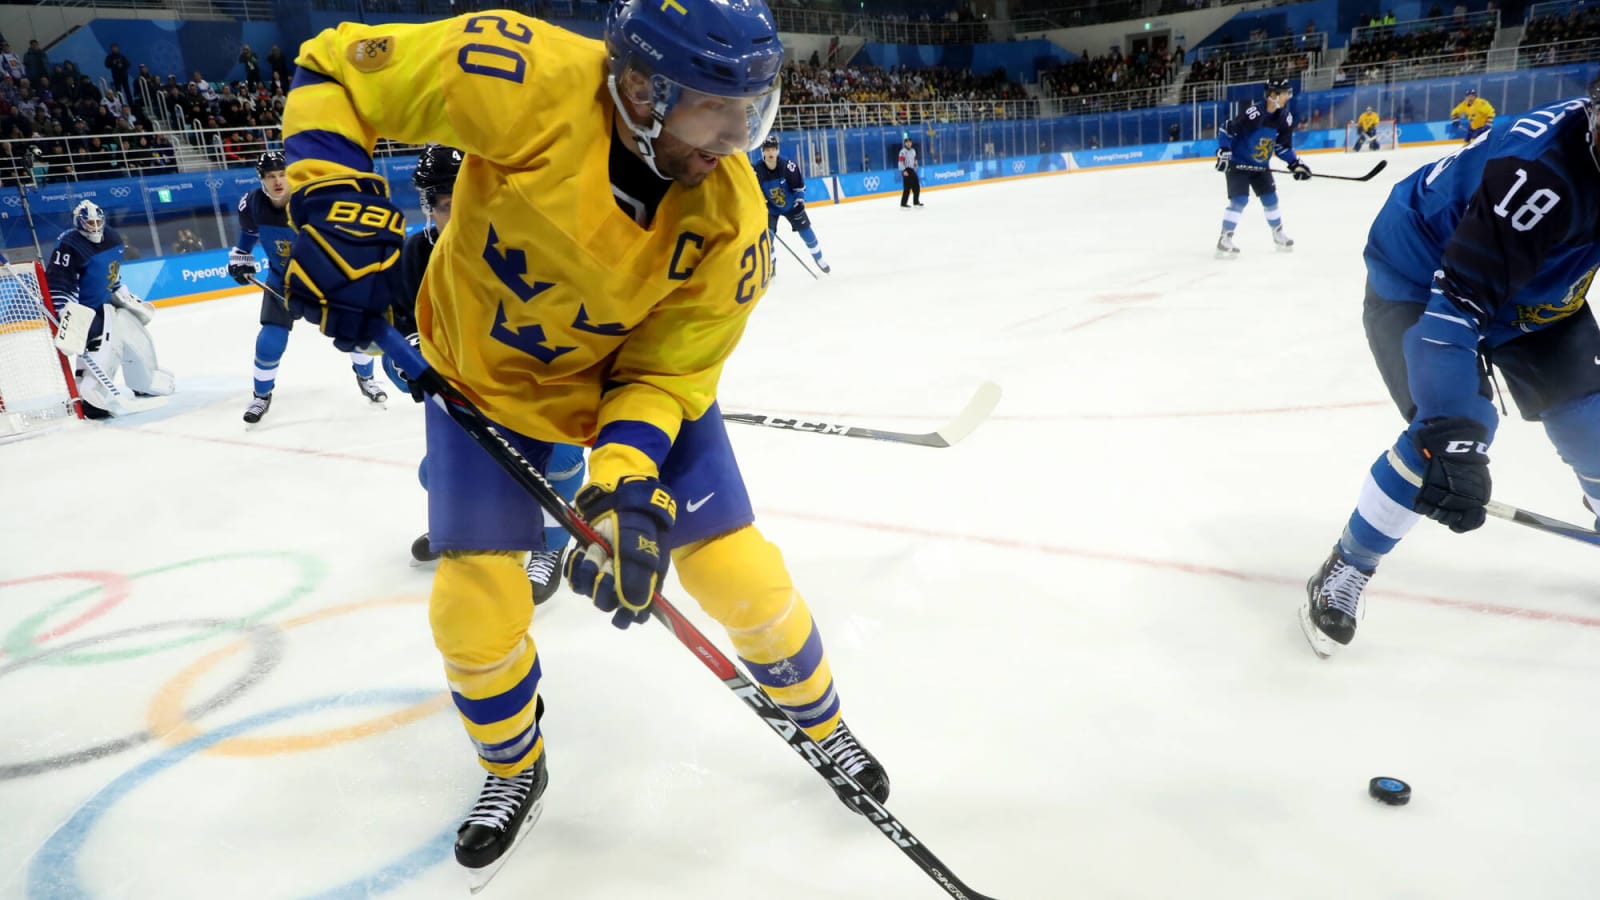 Joel Lundqvist, Sweden’s Unsung Hero, Announces Retirement